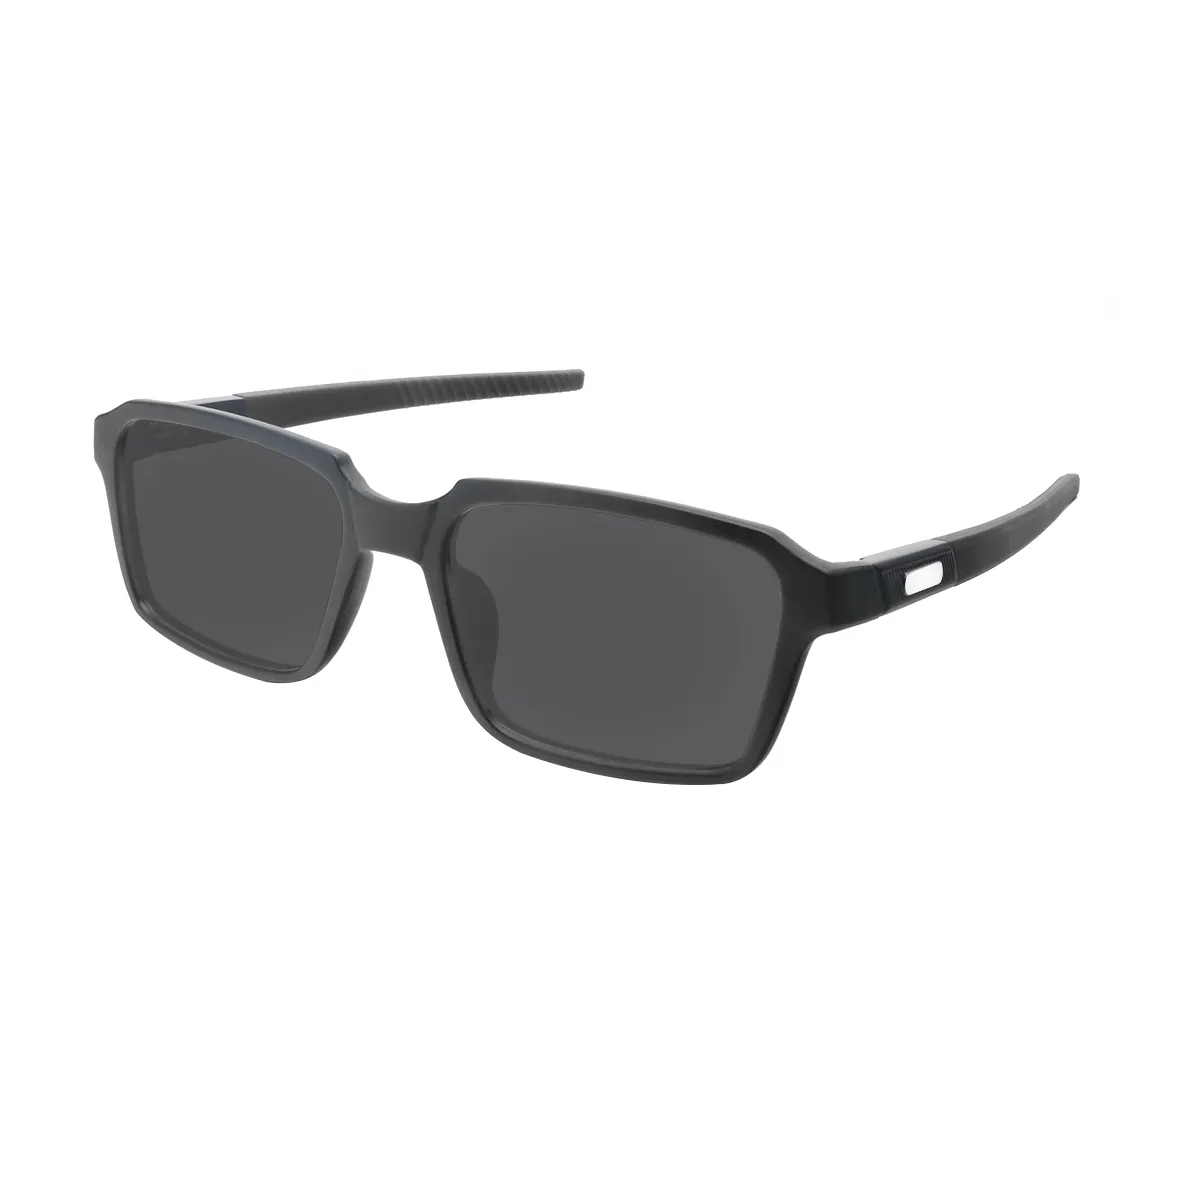 Nielsen - Rectangle Black Sunglasses for Men & Women